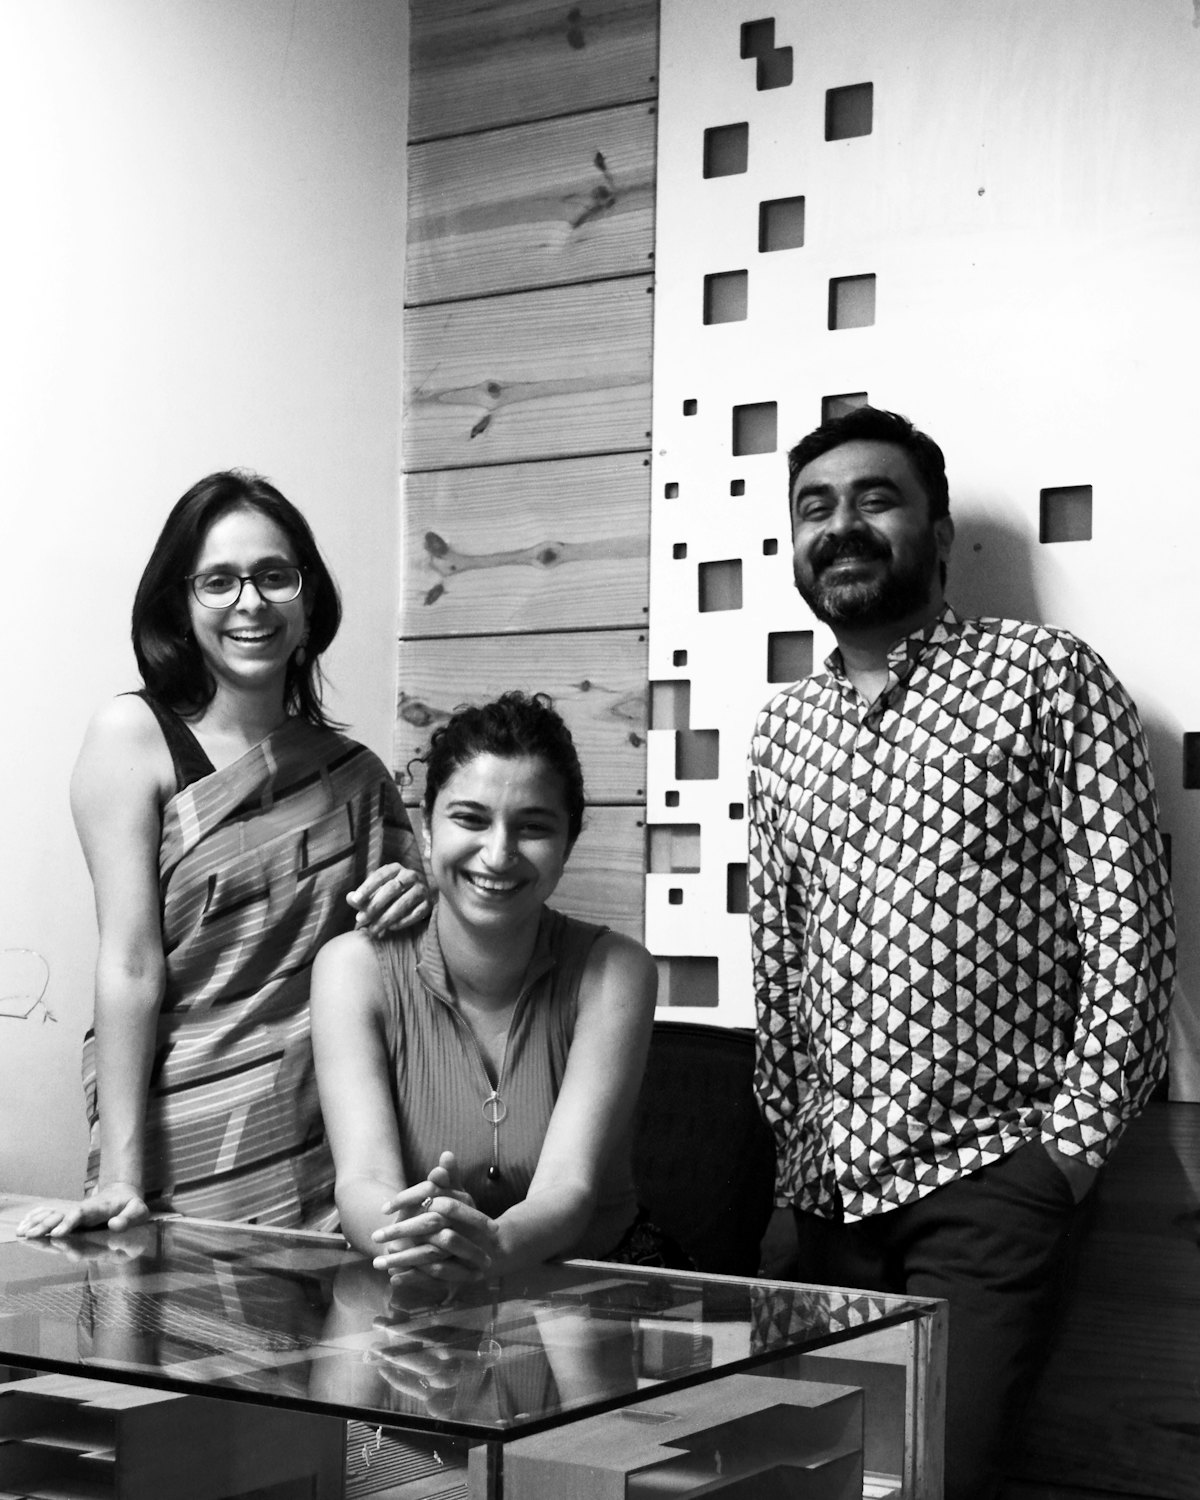 Los socios fundadores de SpaceMatters, estudio de arquitectura que está diseñando la Casa de Adoración bahá'í de Bihar Sharif, India. De izquierda a derecha, Moulshri Joshi, Amritha Ballal y Suditya Sinha.